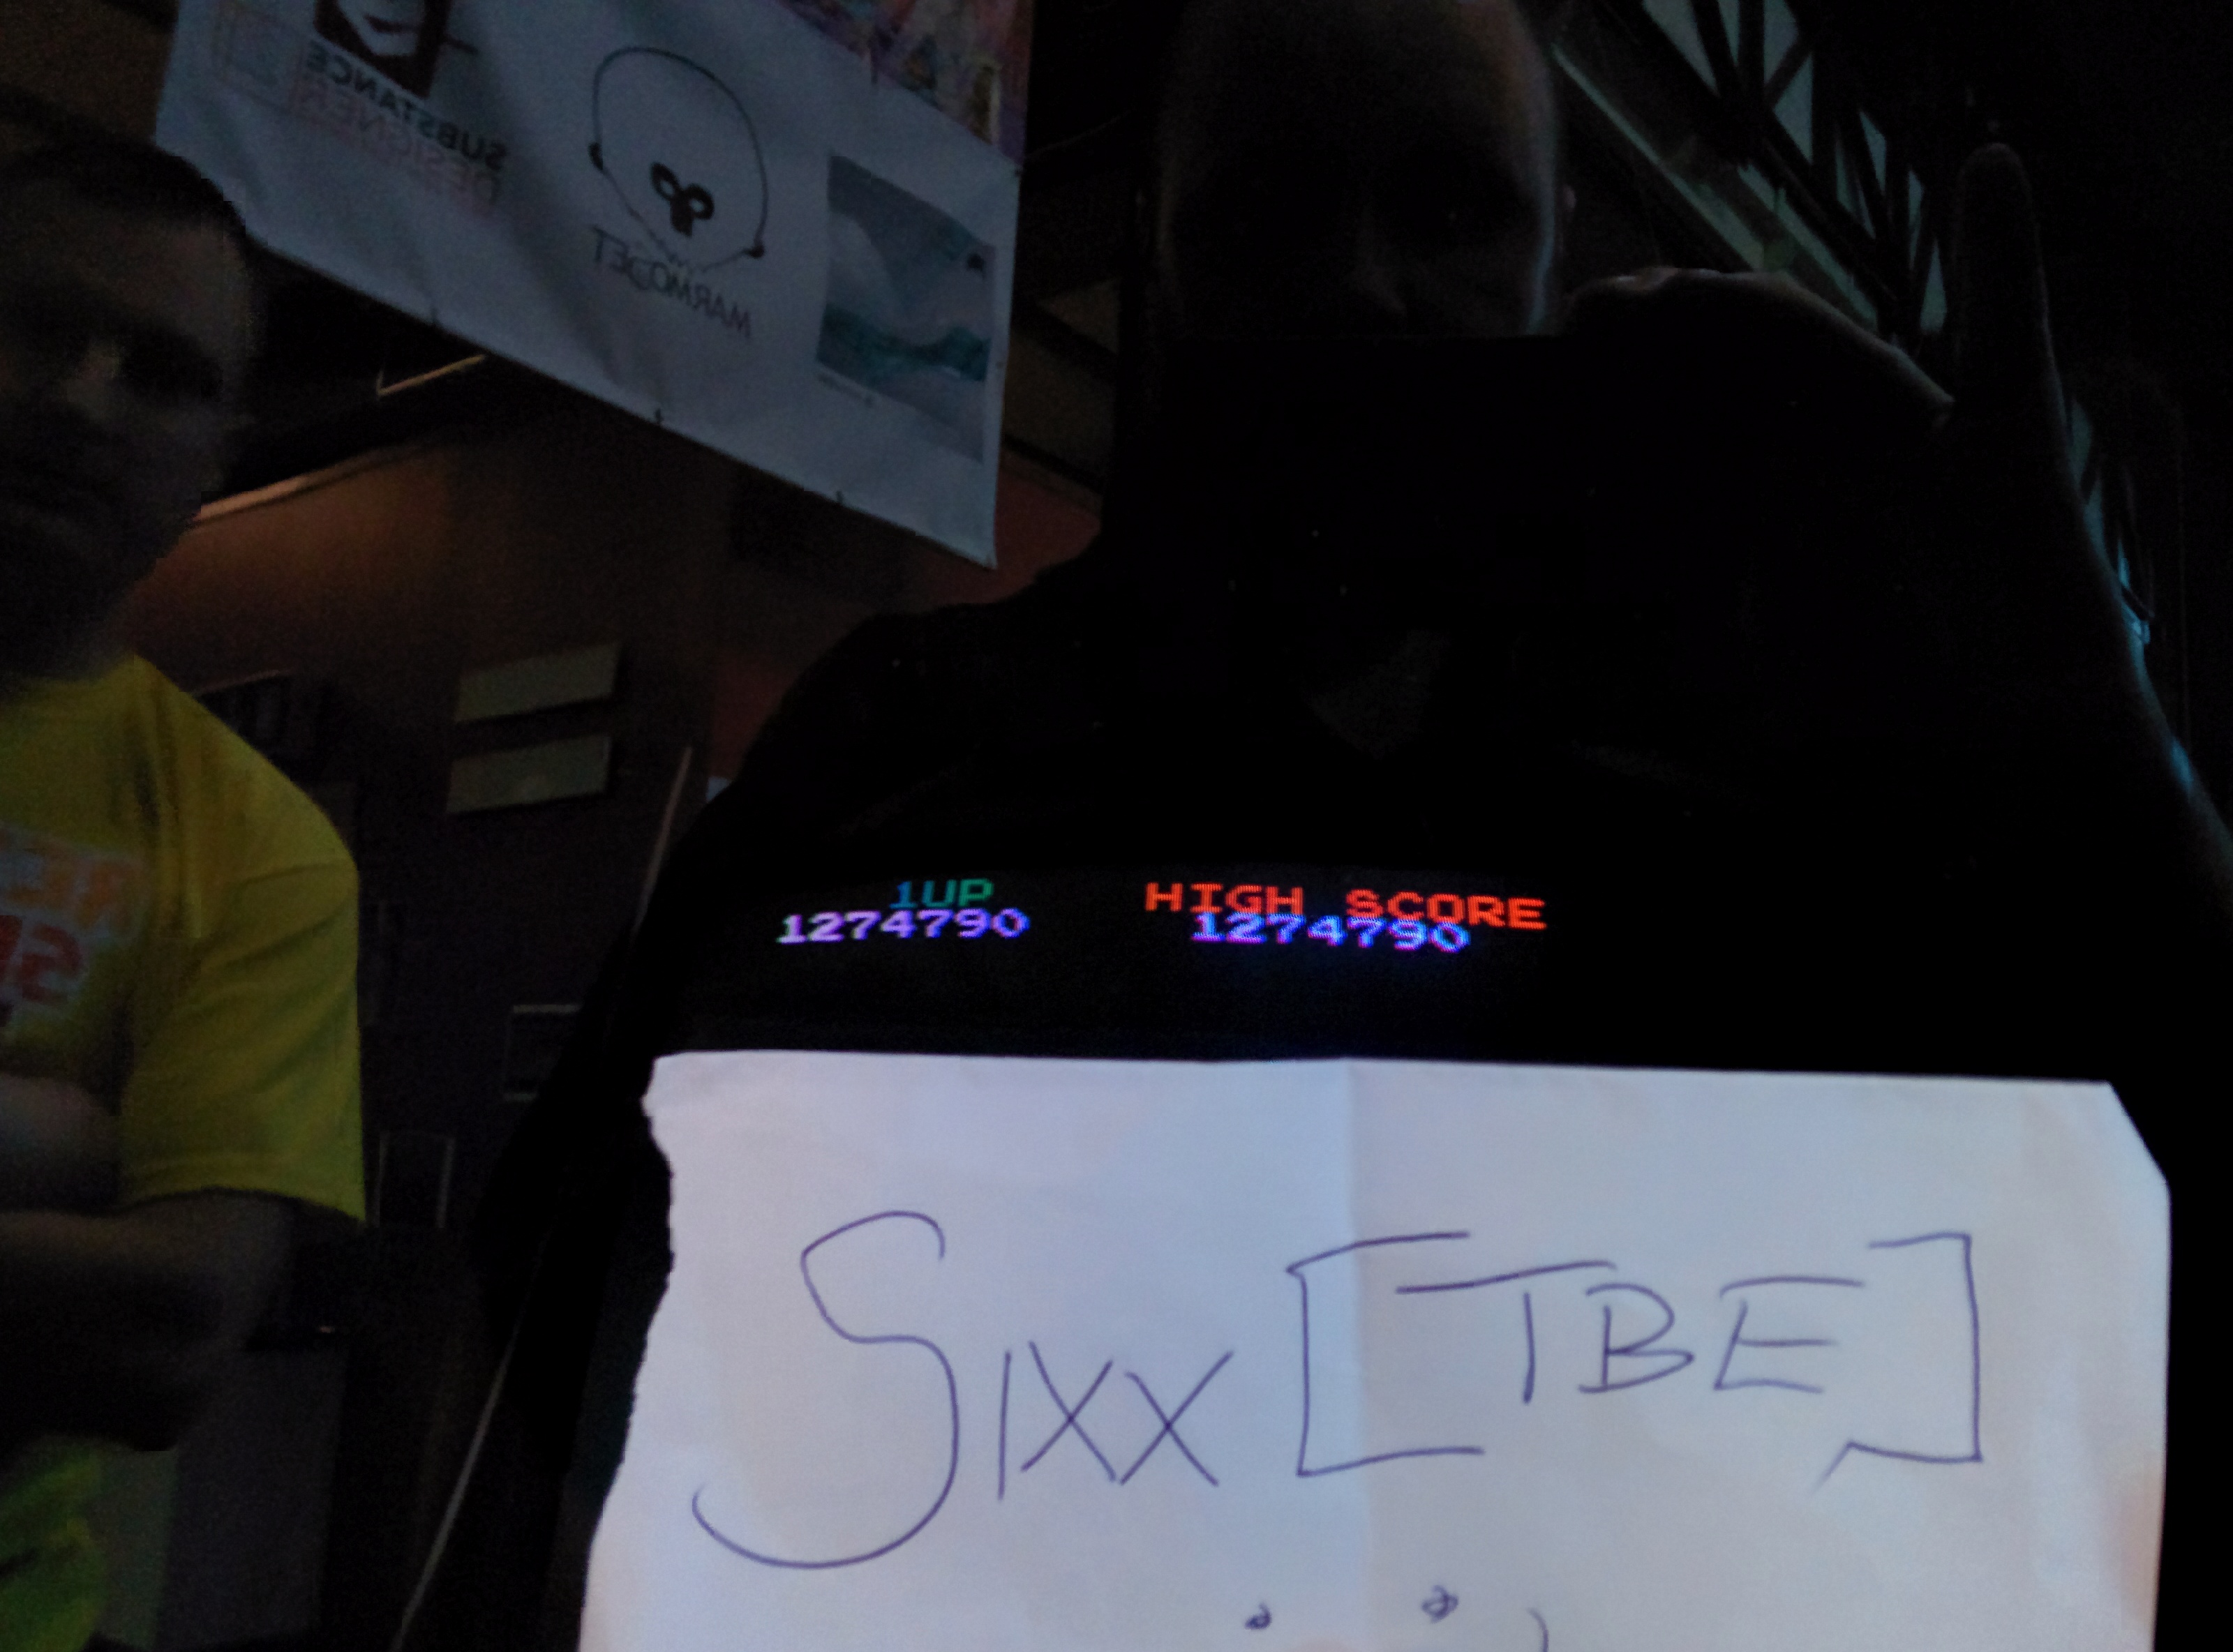 Sixx: Bubble Bobble (Arcade) 1,274,790 points on 2014-05-03 16:00:22